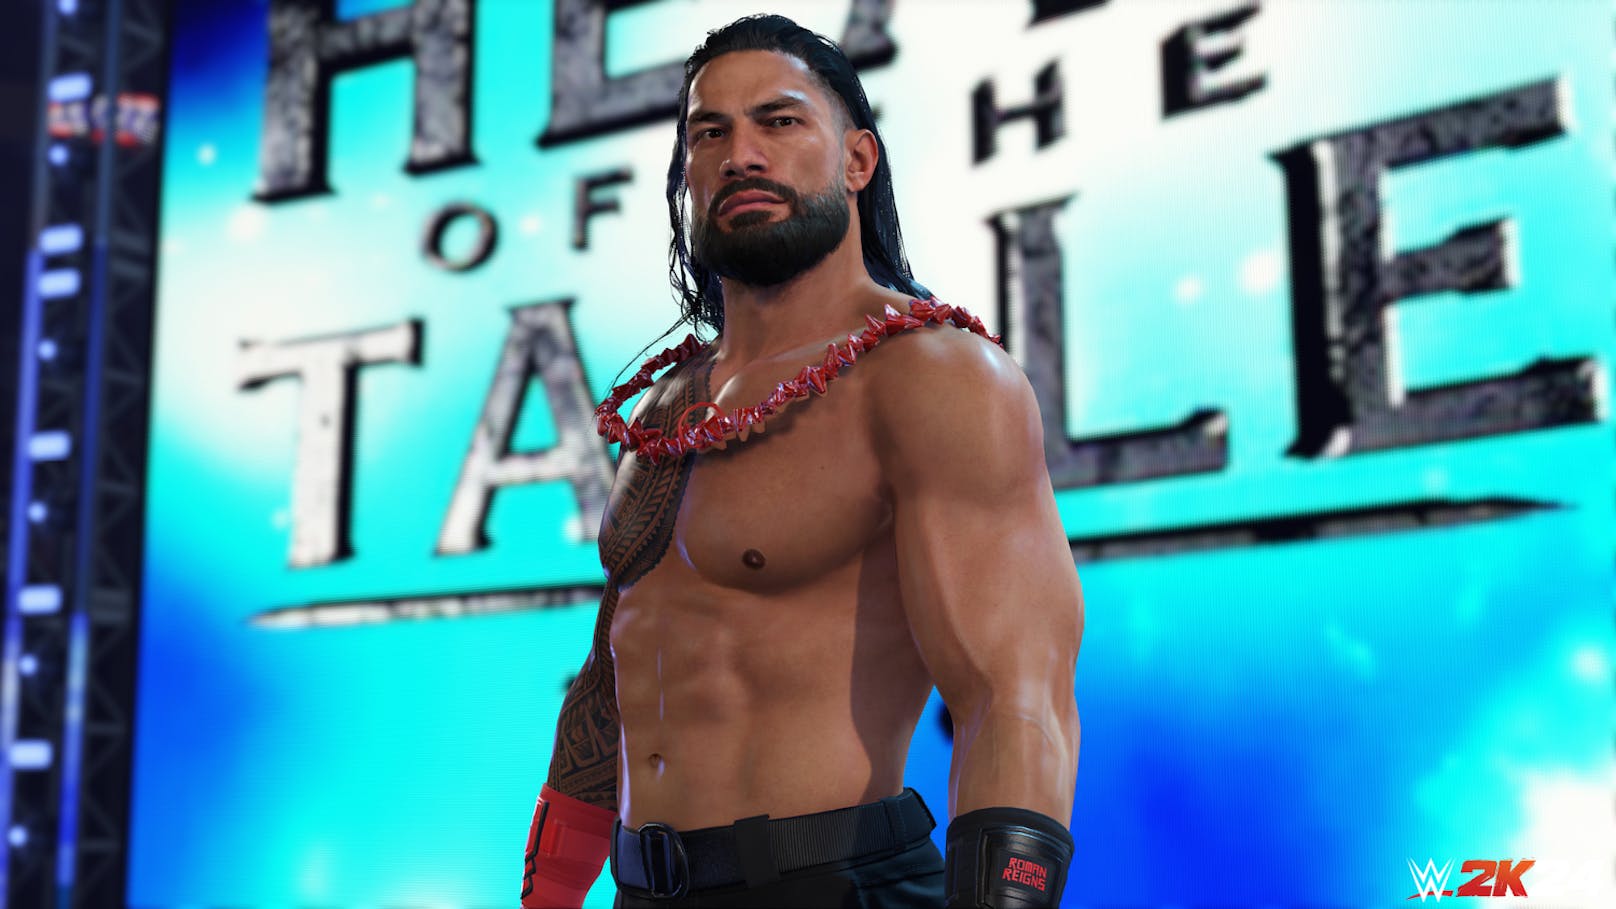 WWE 2K24: Die besten Screenshots zum neuen Wrestling-Game